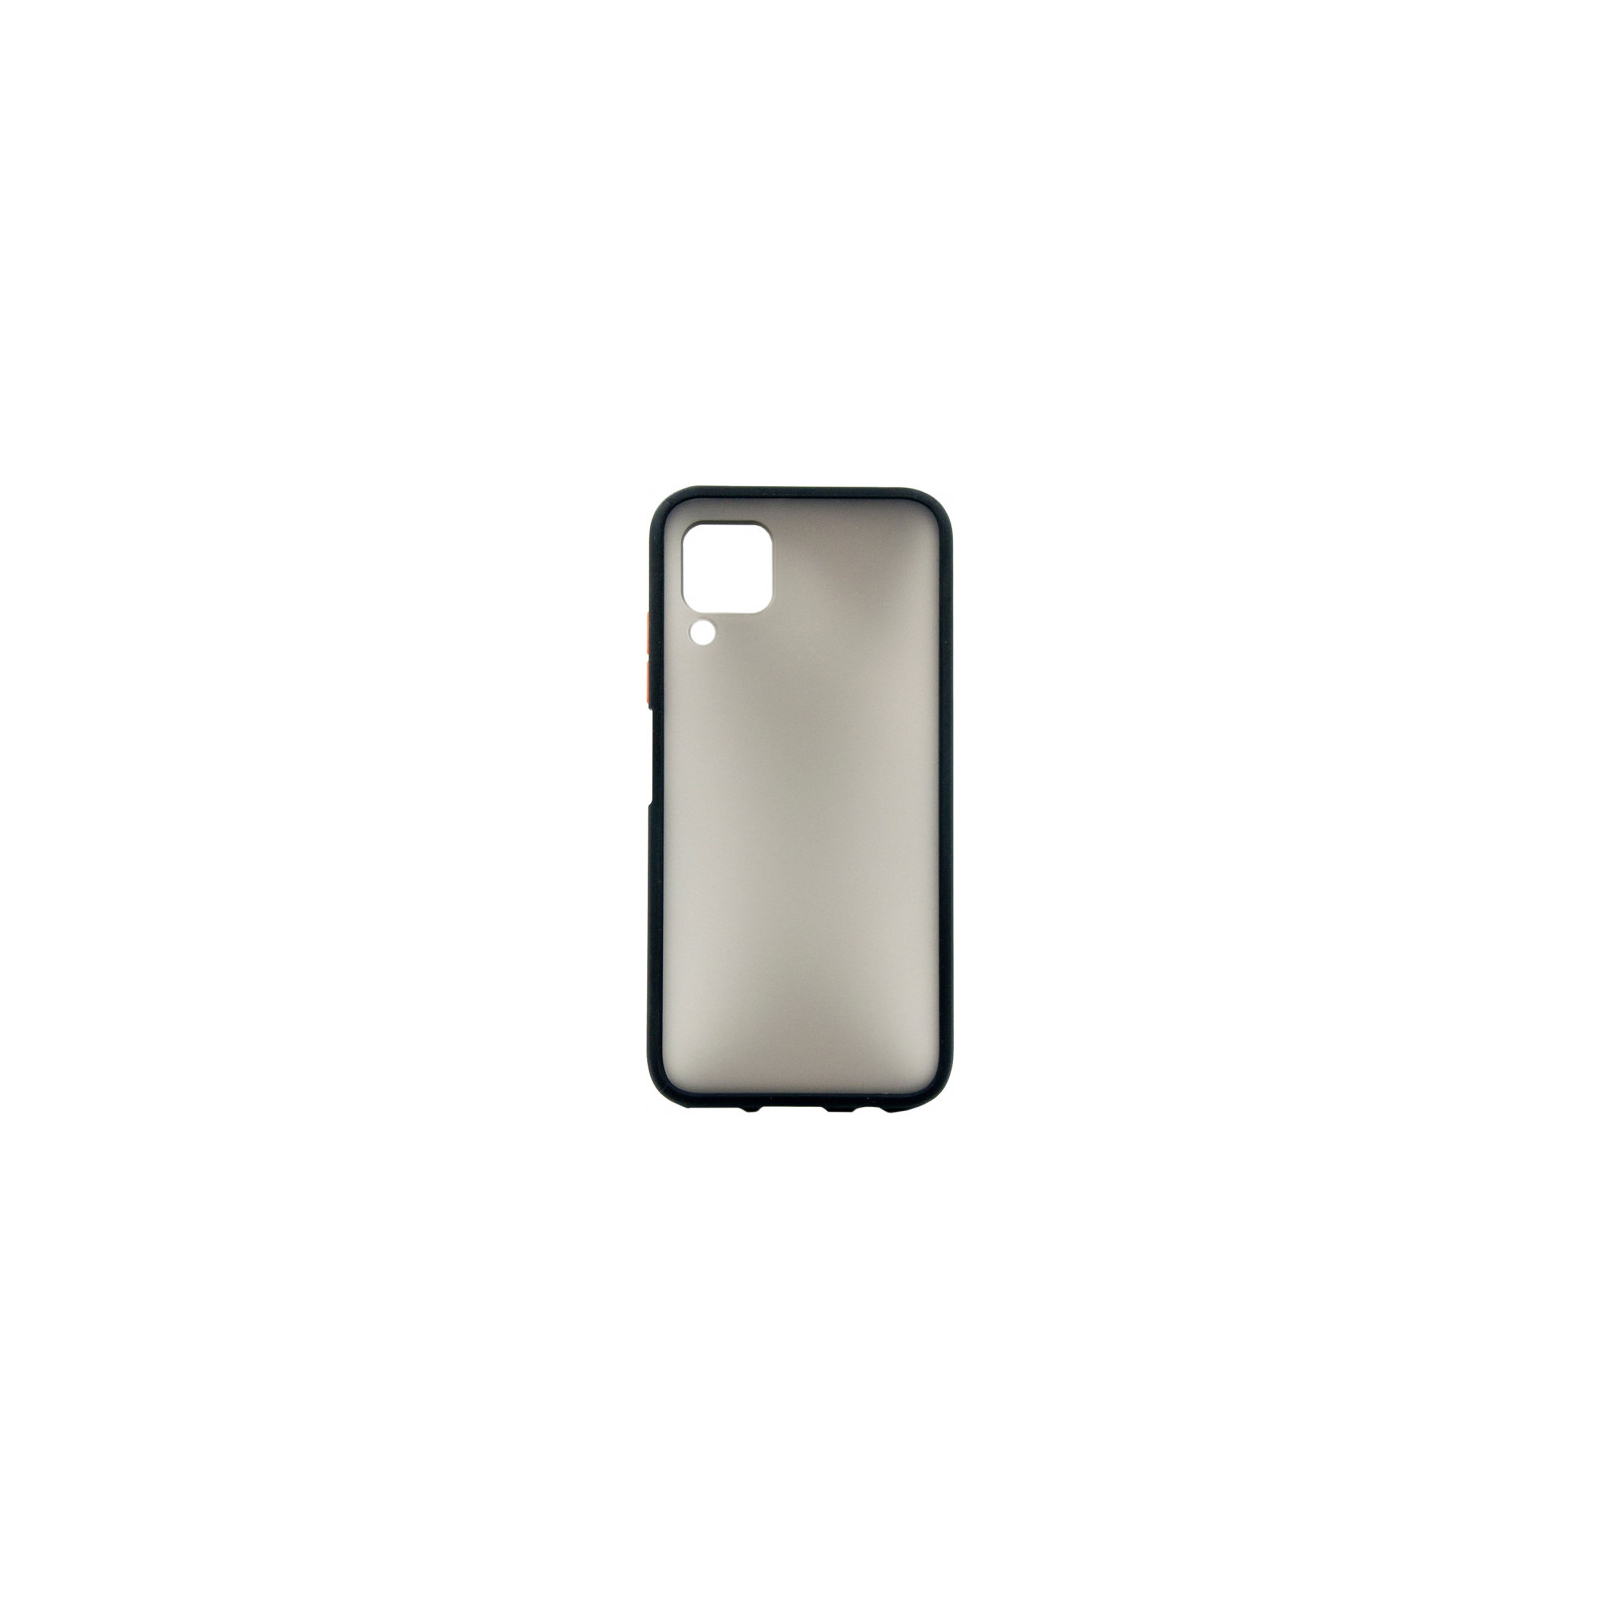 Чехол для мобильного телефона Dengos Matt Huawei P40 Lite, black (DG-TPU-MATT-44) (DG-TPU-MATT-44)